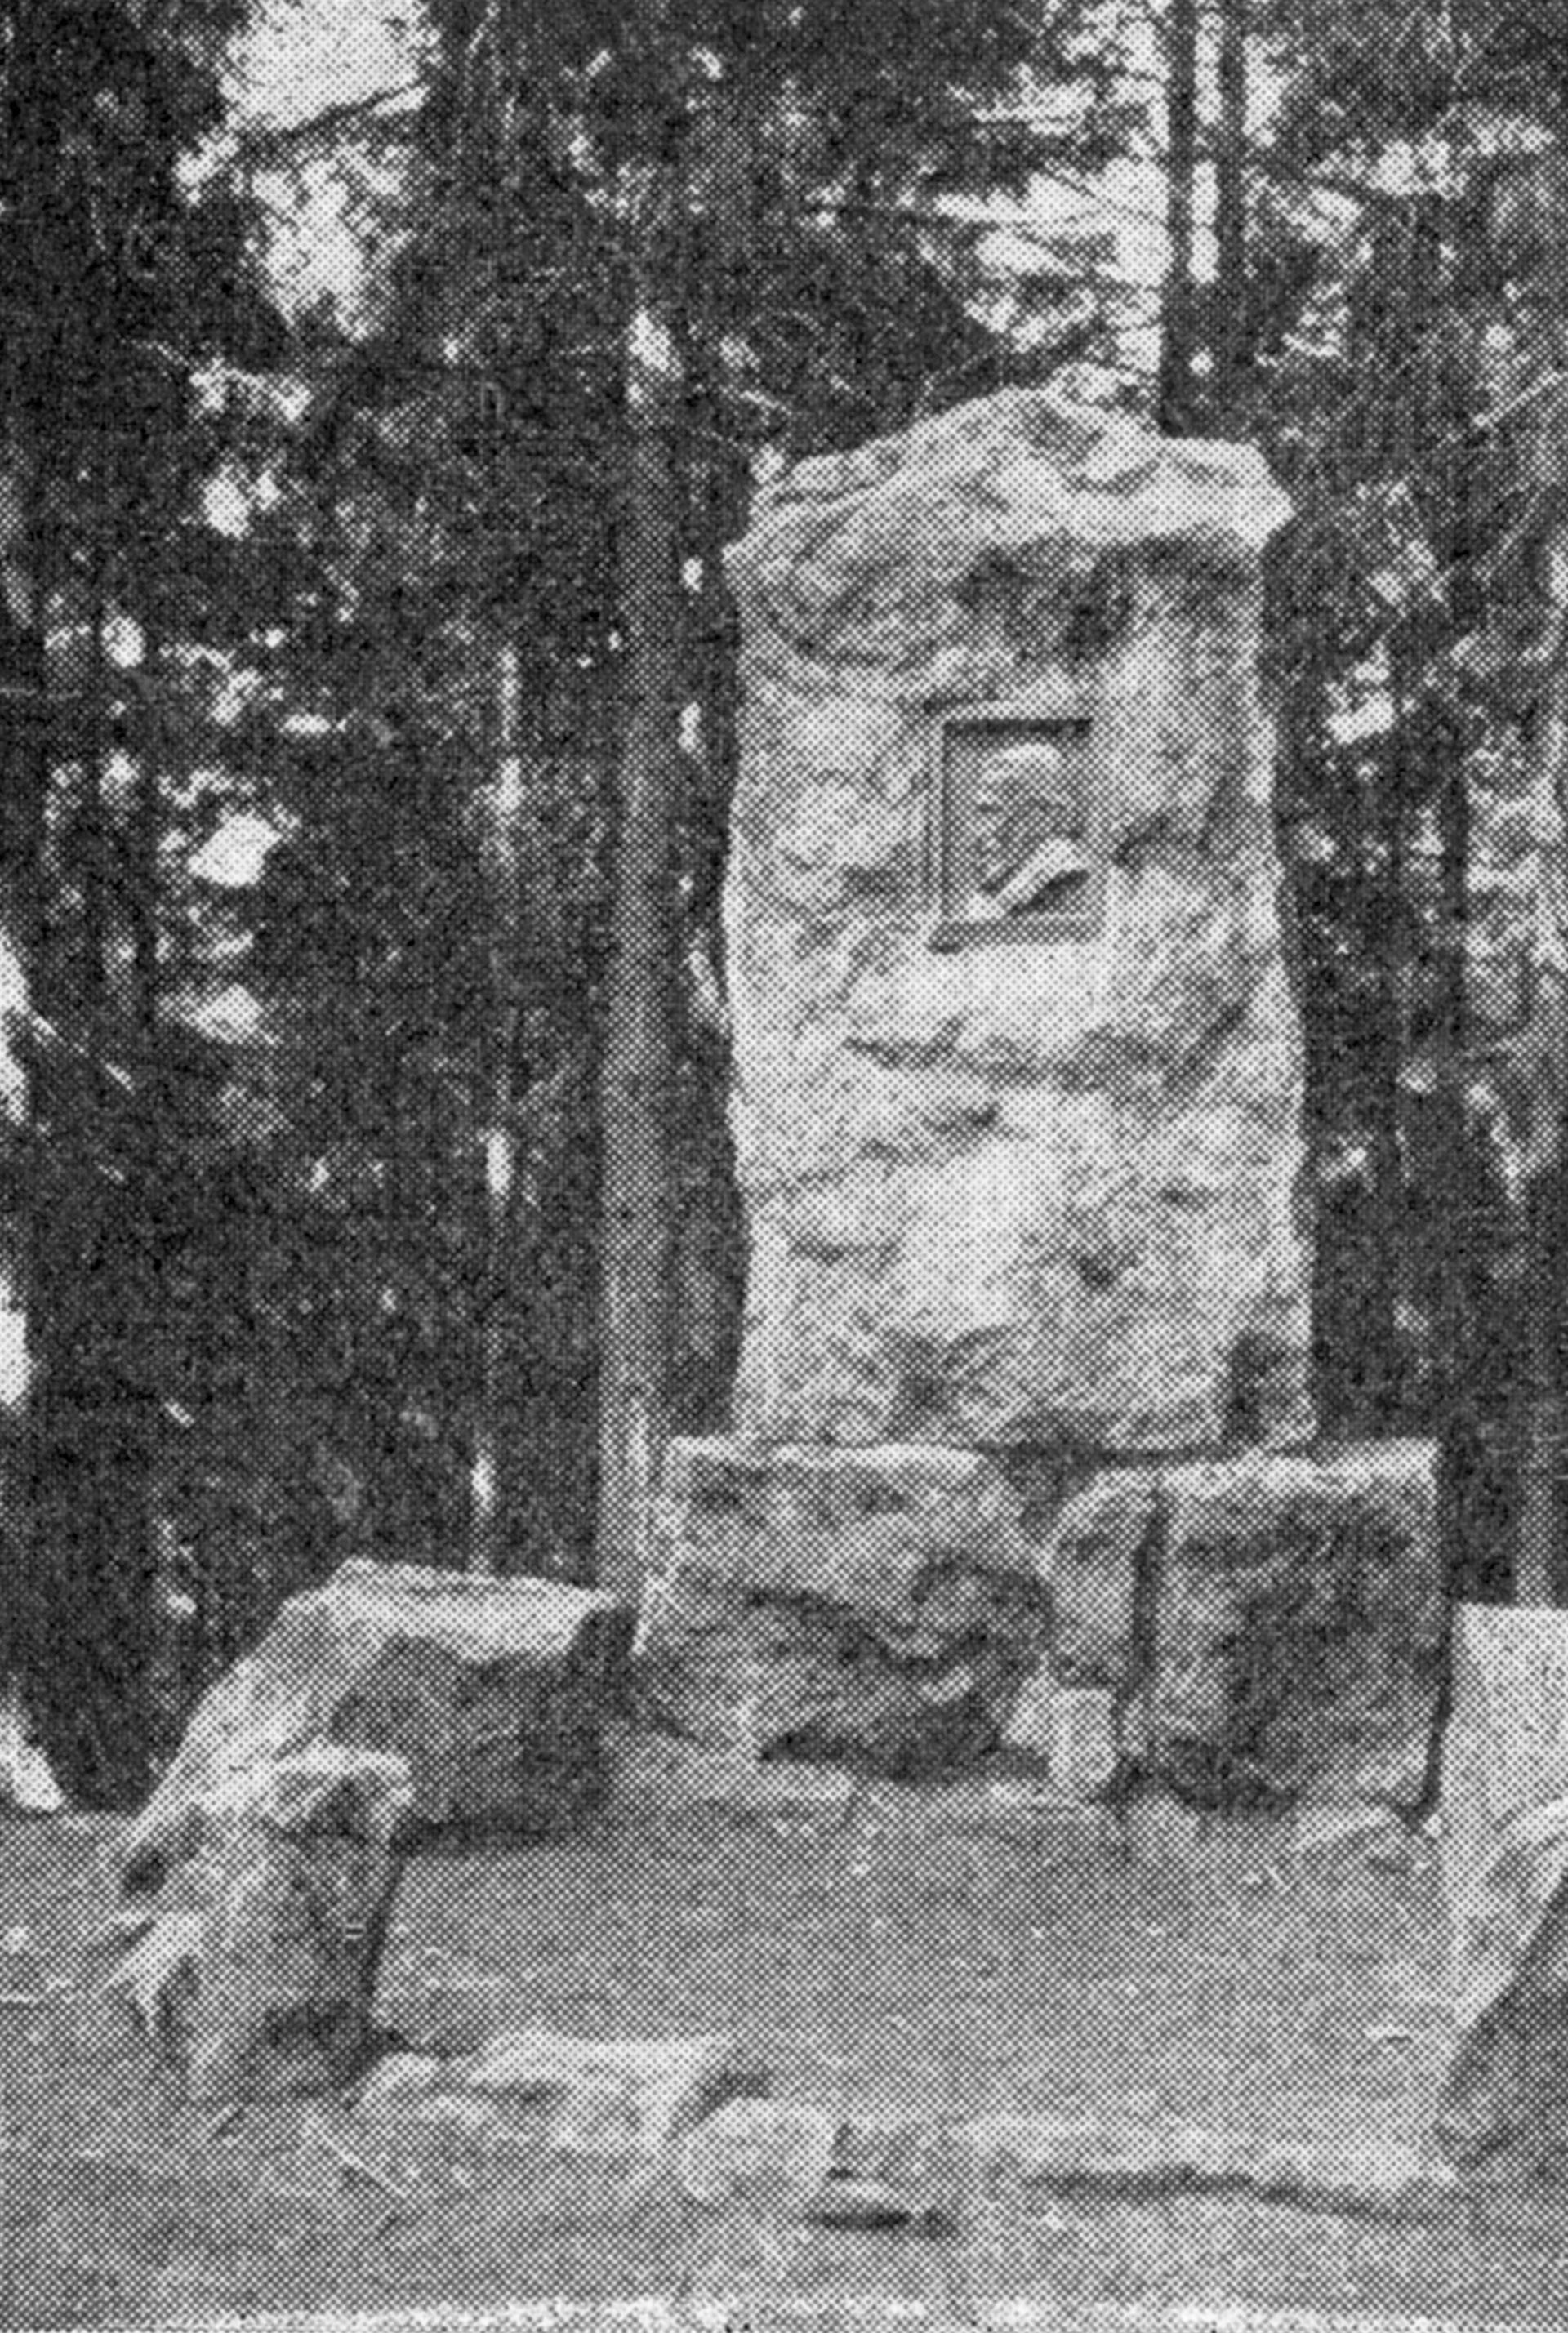 Raabedenkmal im Hils bei Eschershausen